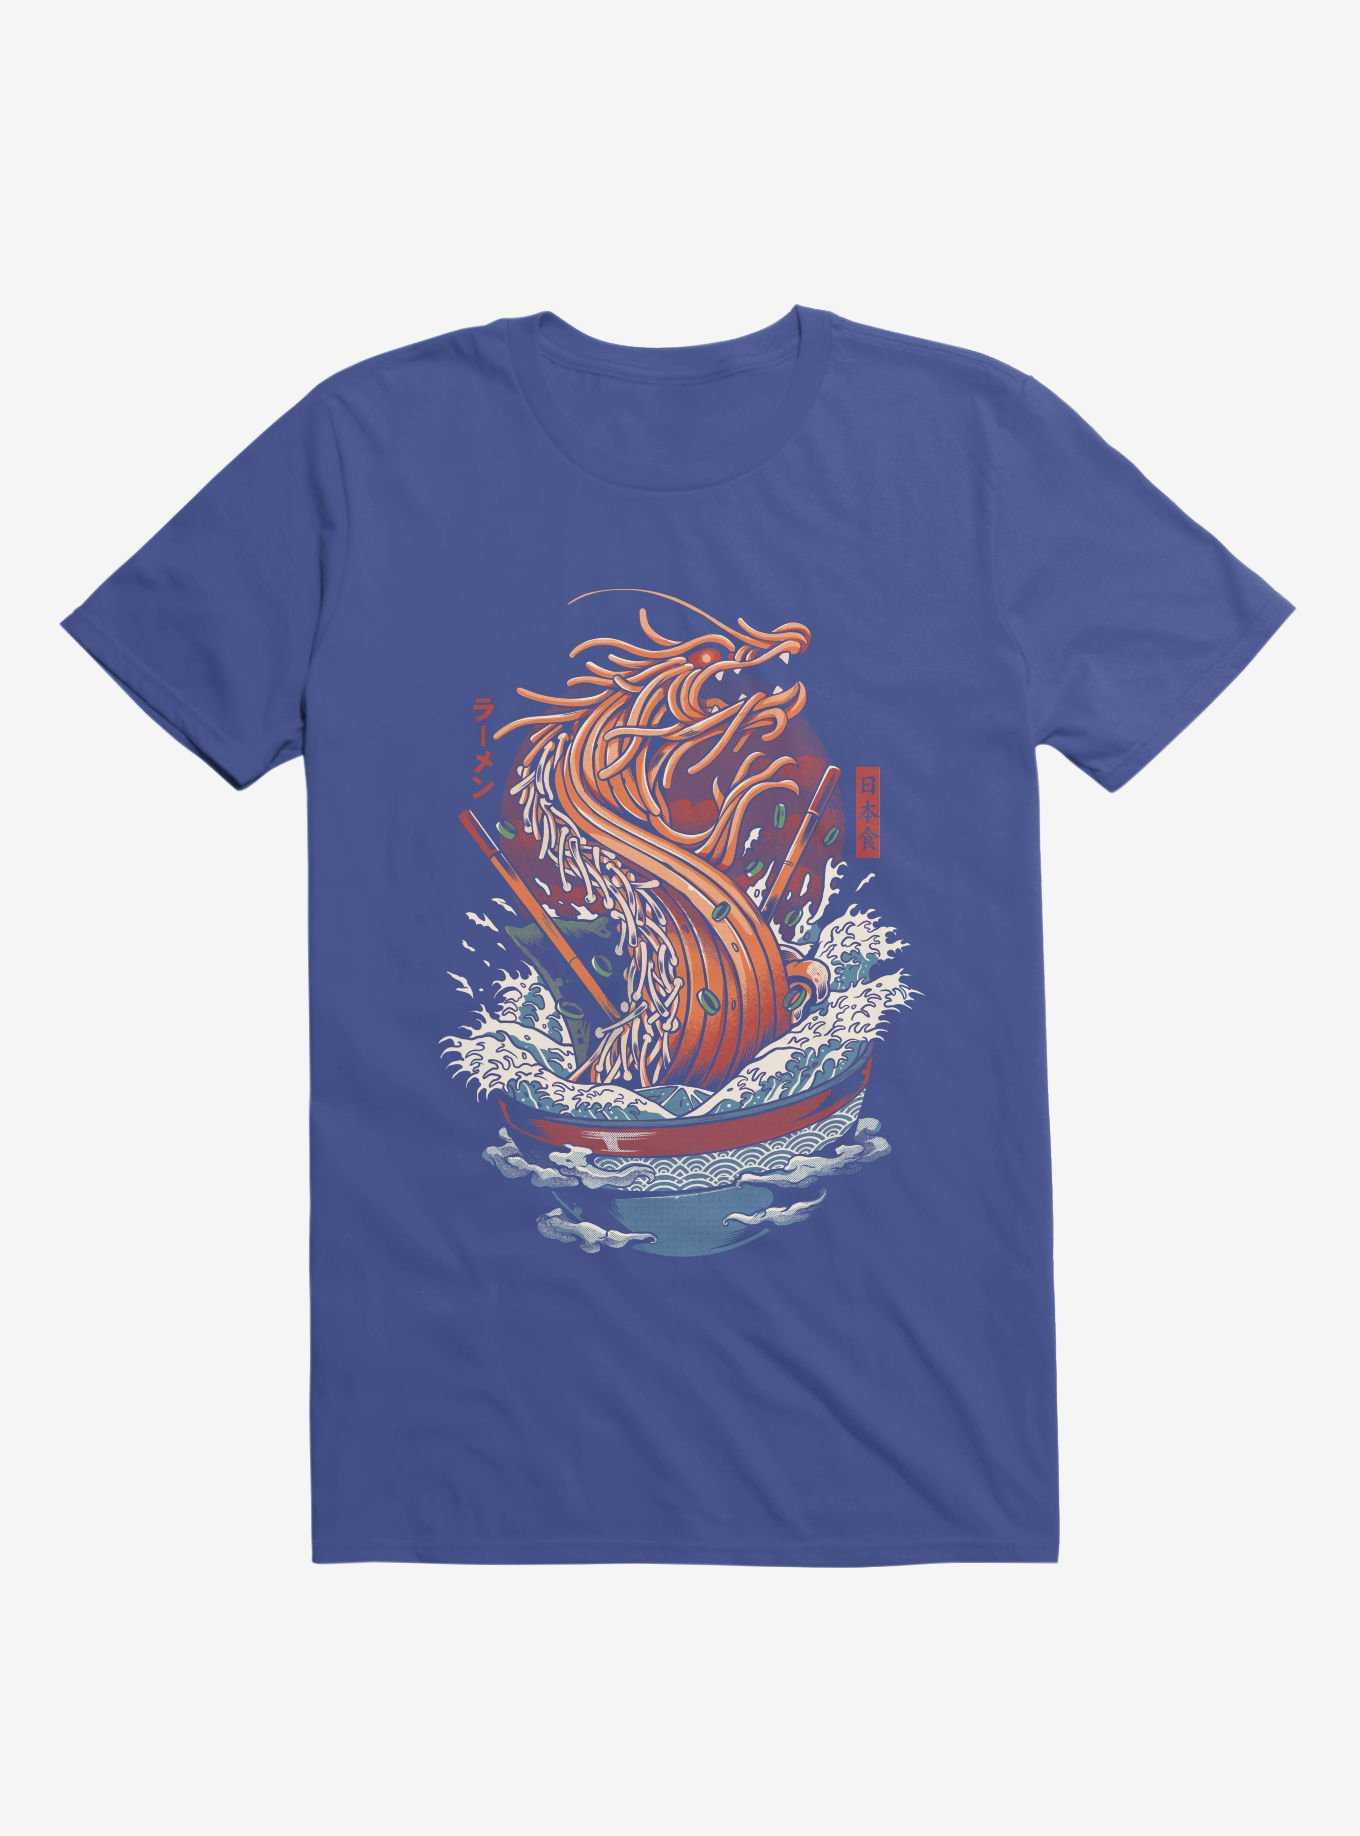 Ramen Noodle Dragon Royal Blue T-Shirt, , hi-res